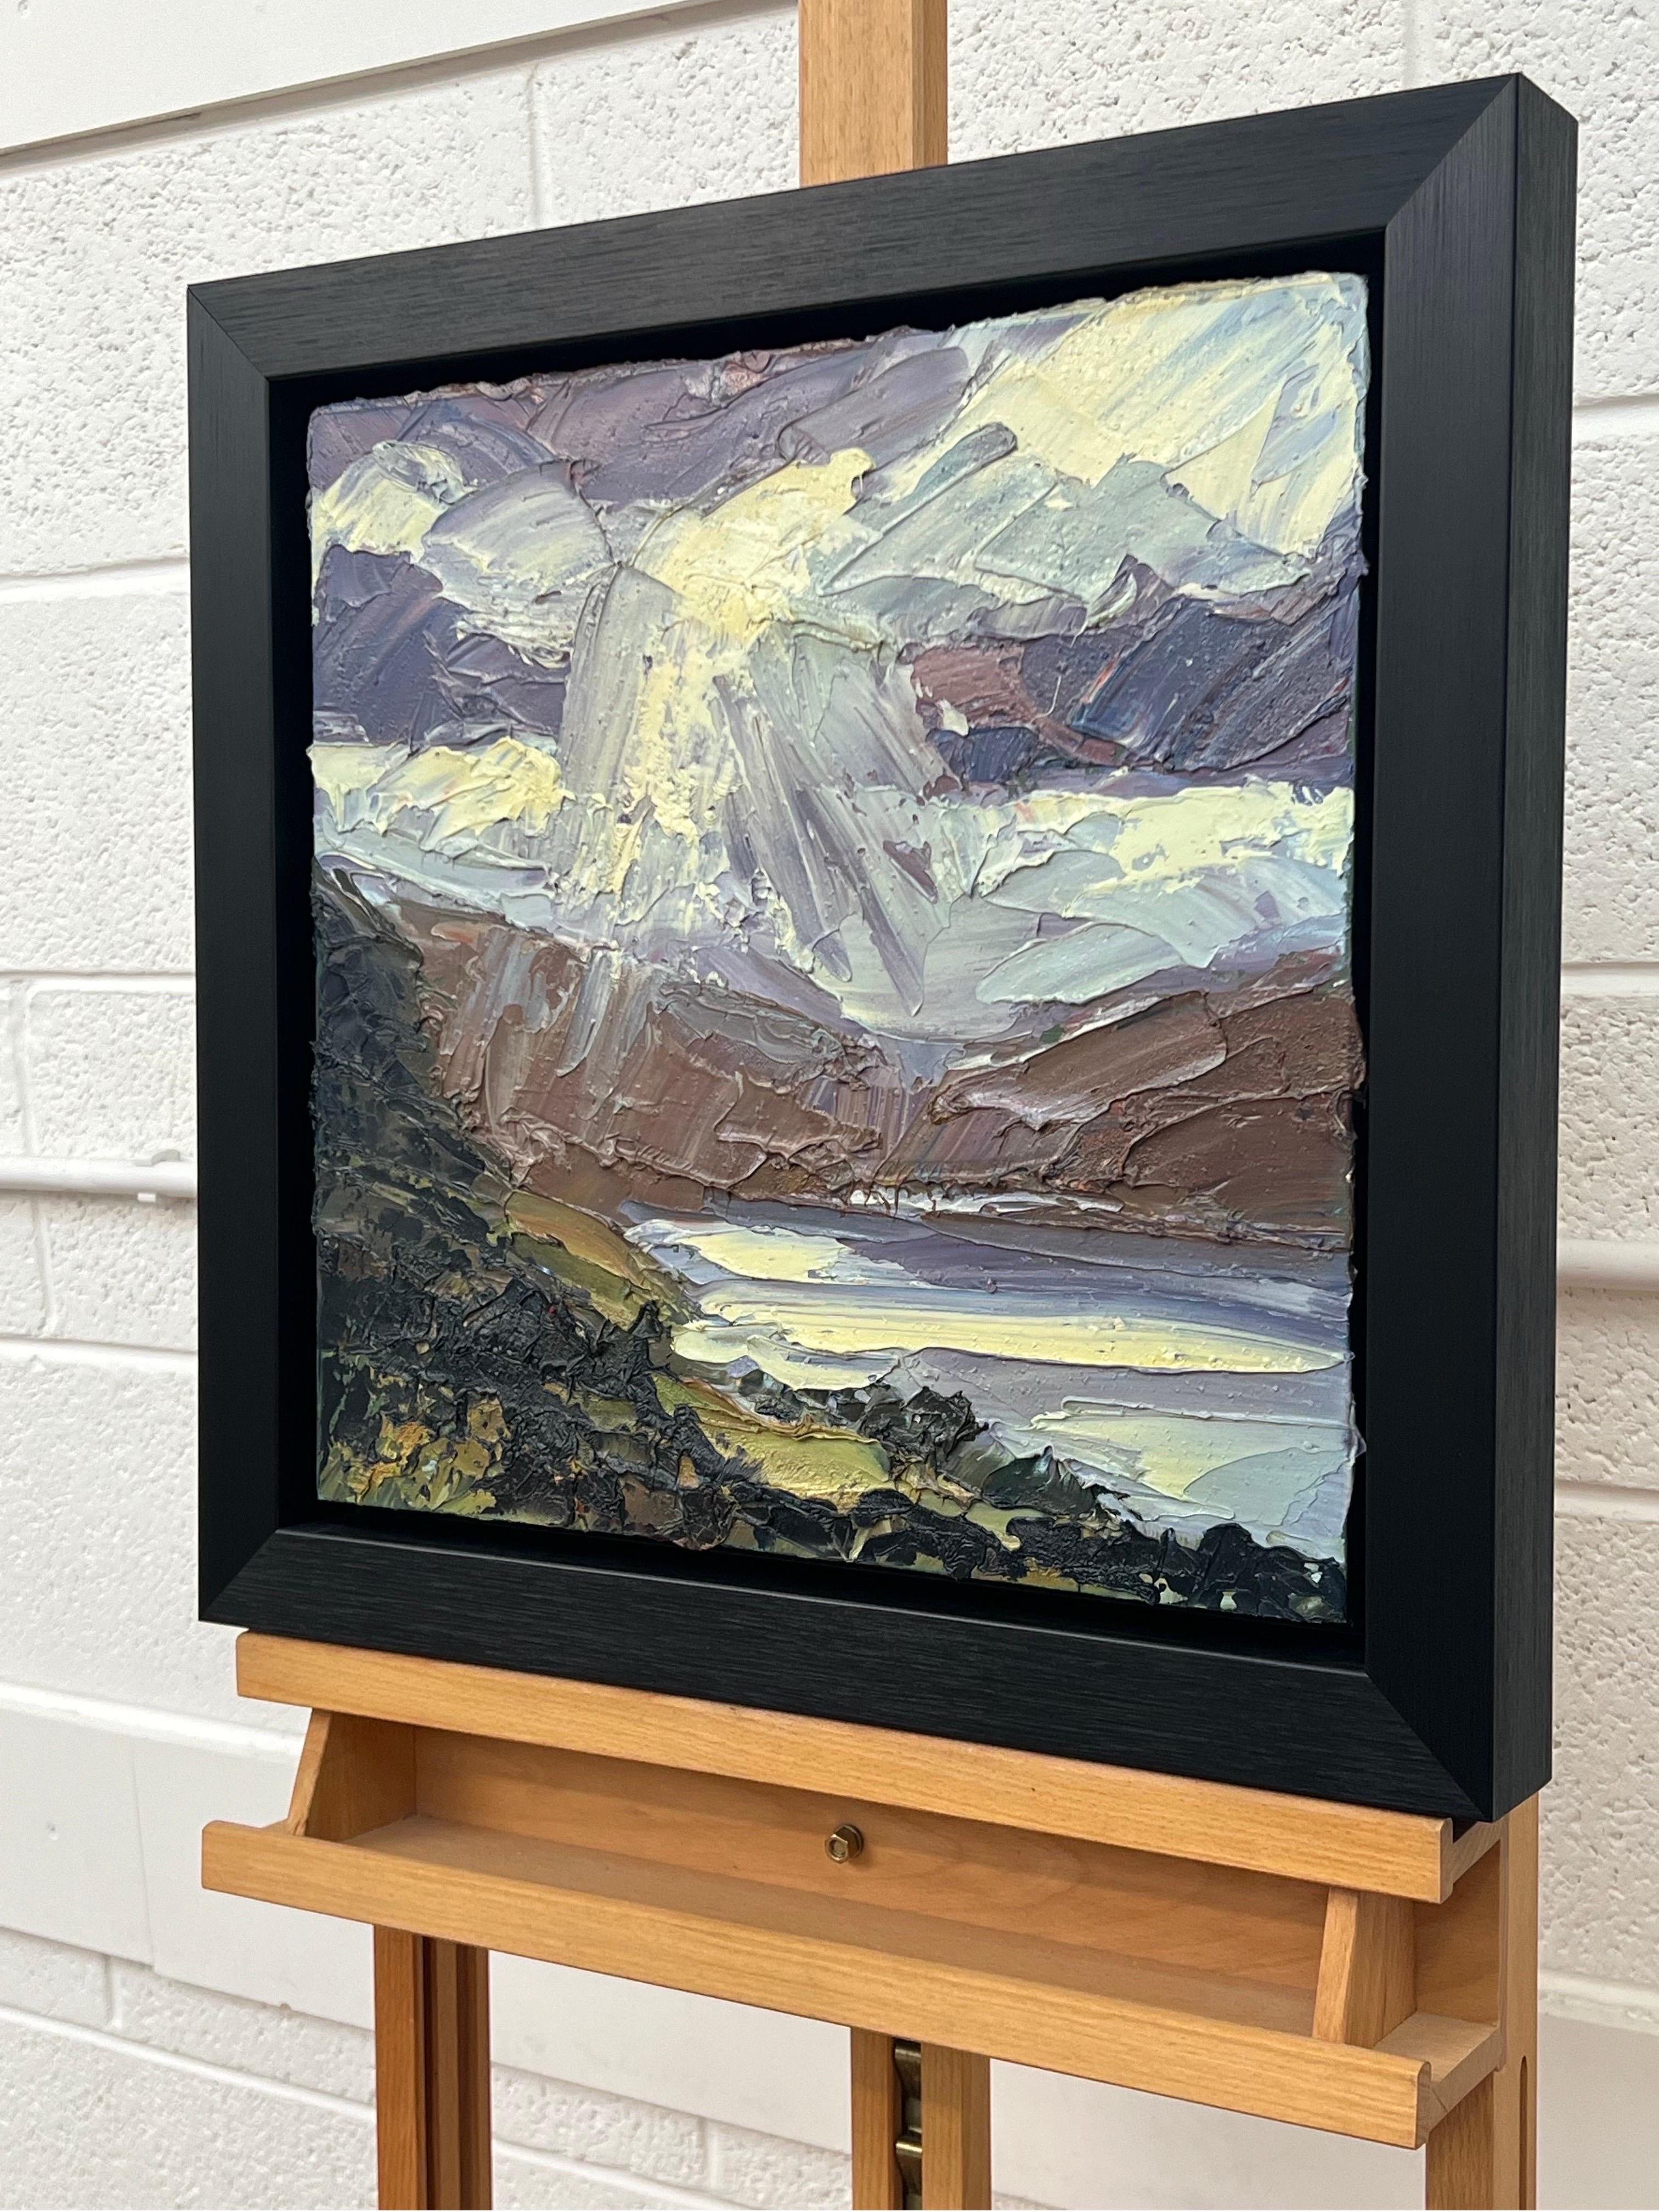 Impasto Ölgemälde von Derwent Water in Keswick im Lake District von England vom britischen Landschaftsmaler Colin Halliday. Dieses Gemälde bringt die Intensität der Wolken in Nordengland und die ästhetische Schönheit des dramatischen Wetters zum